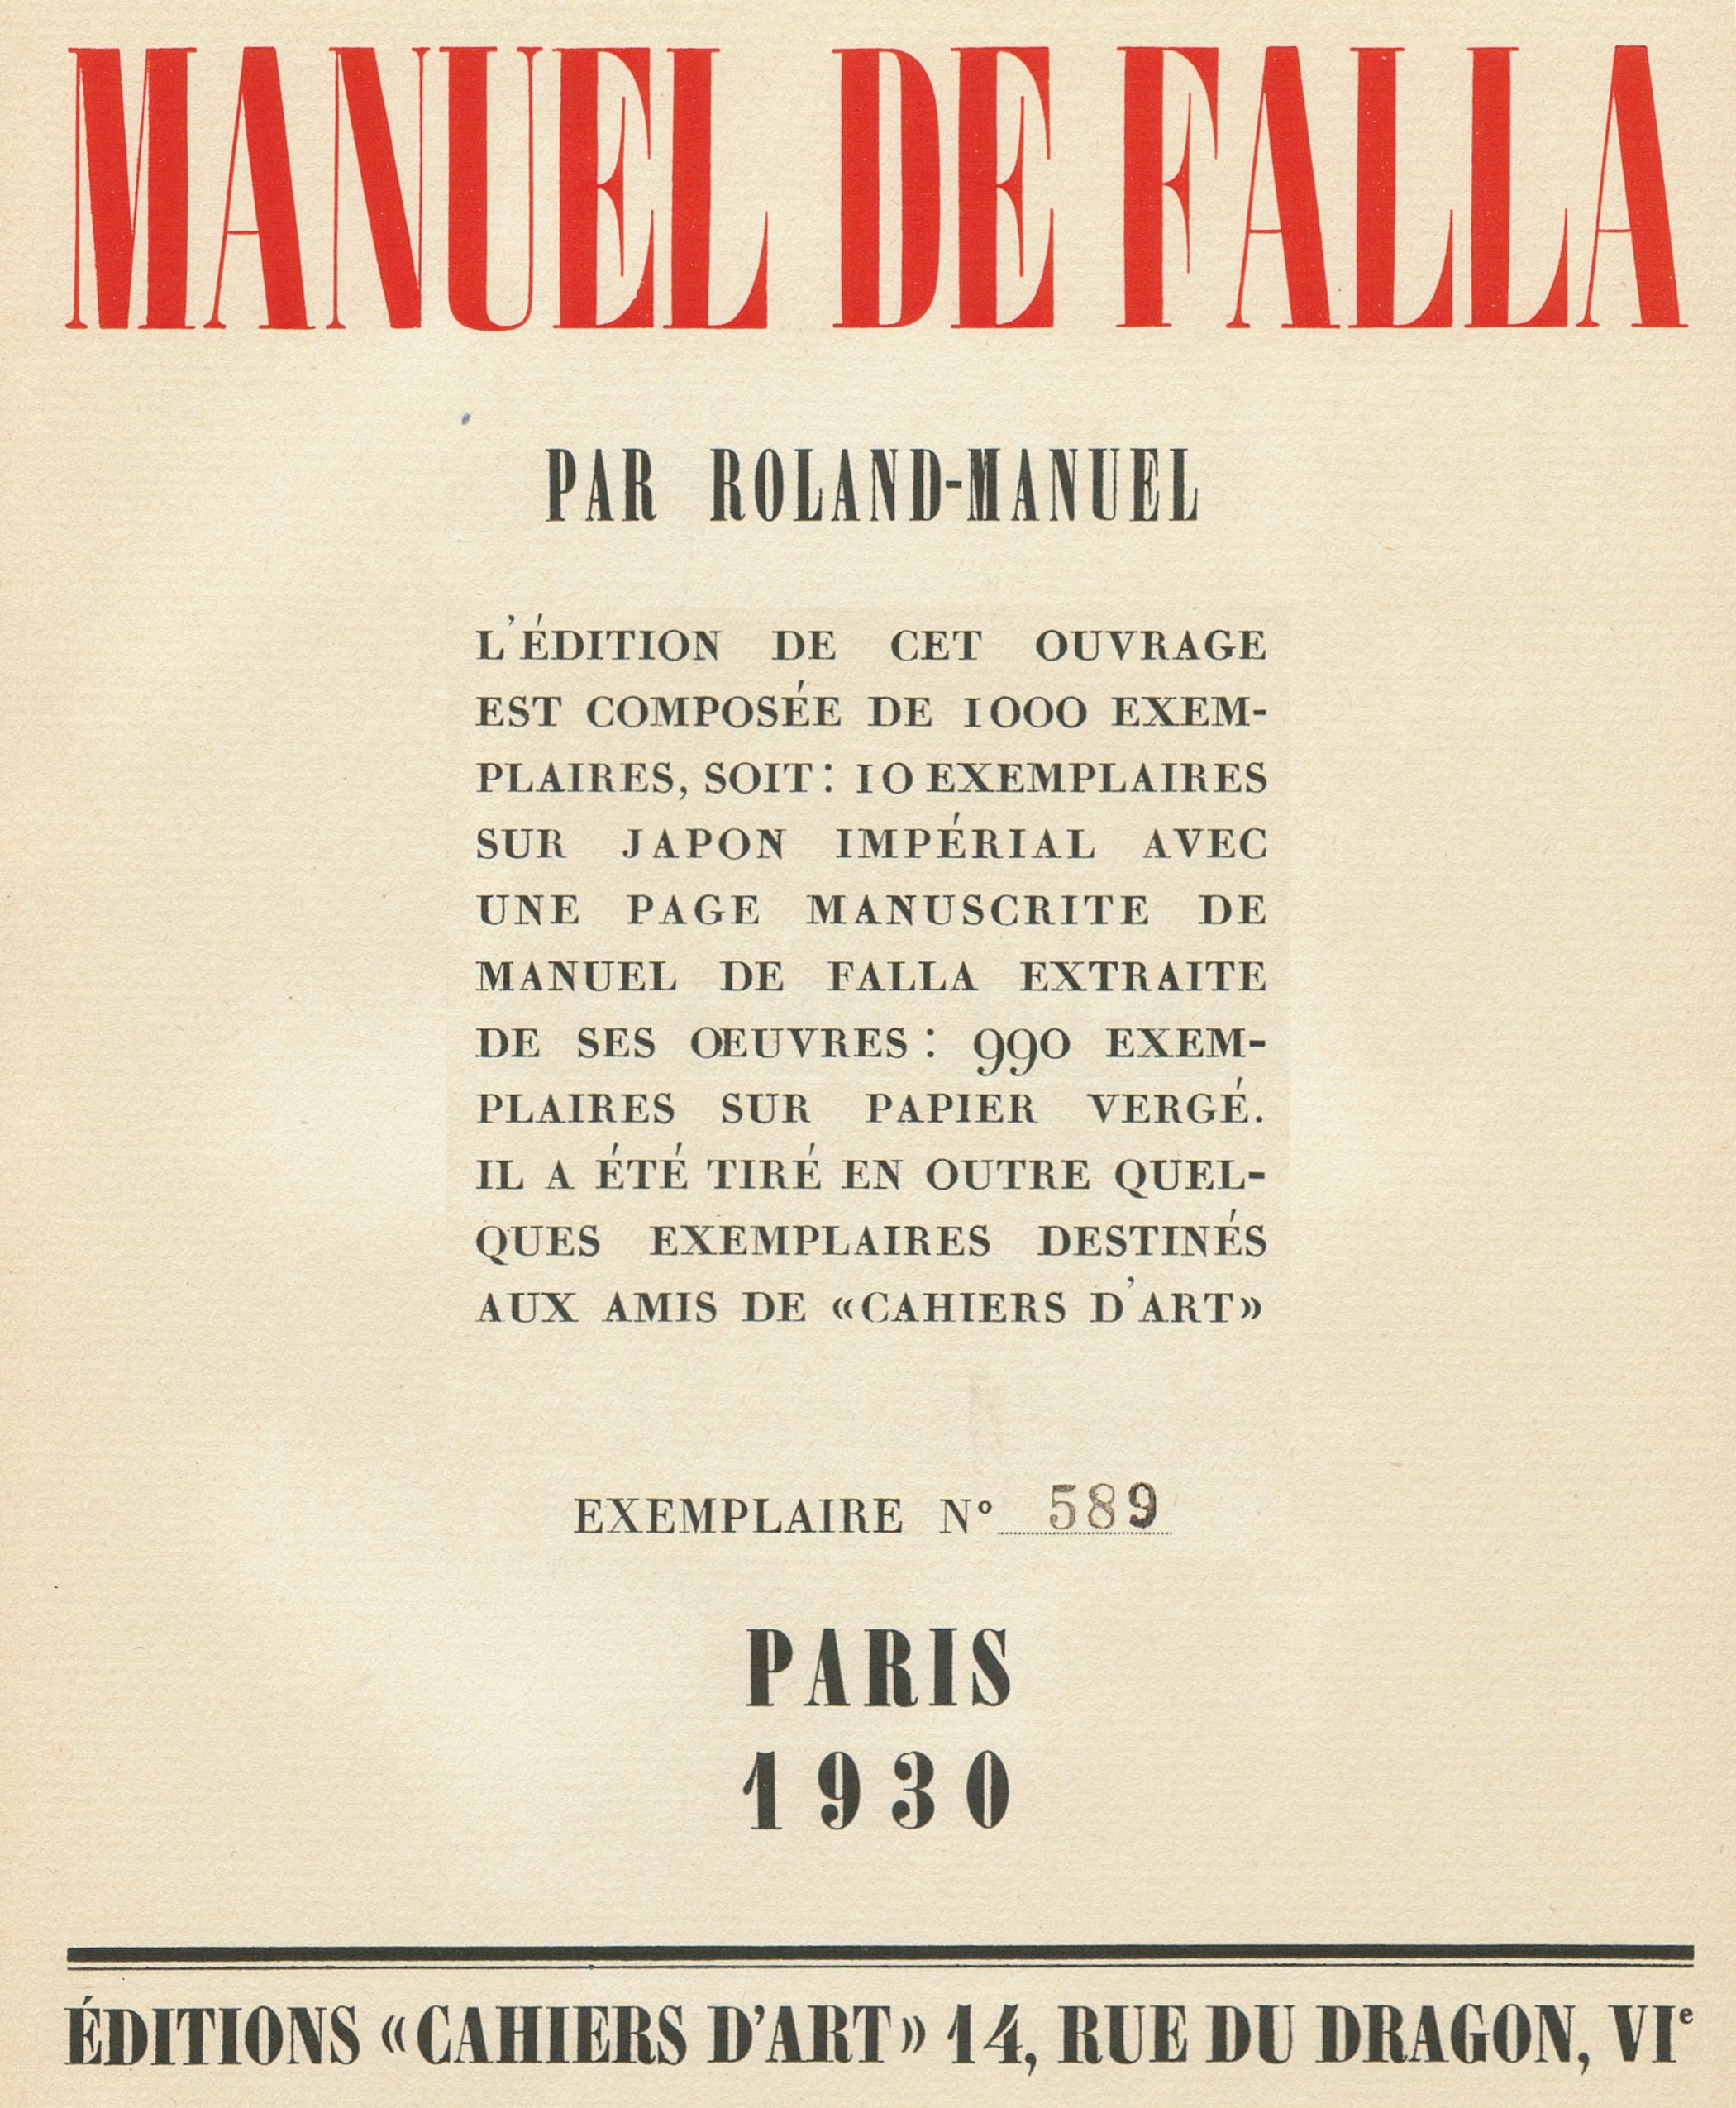 Manuel de FALLA, Montage page titre de l'ouvrage de Roland_Manuel, «MANUEL DE FALLA», 1ère édition Paris 1930, No 589 de 990